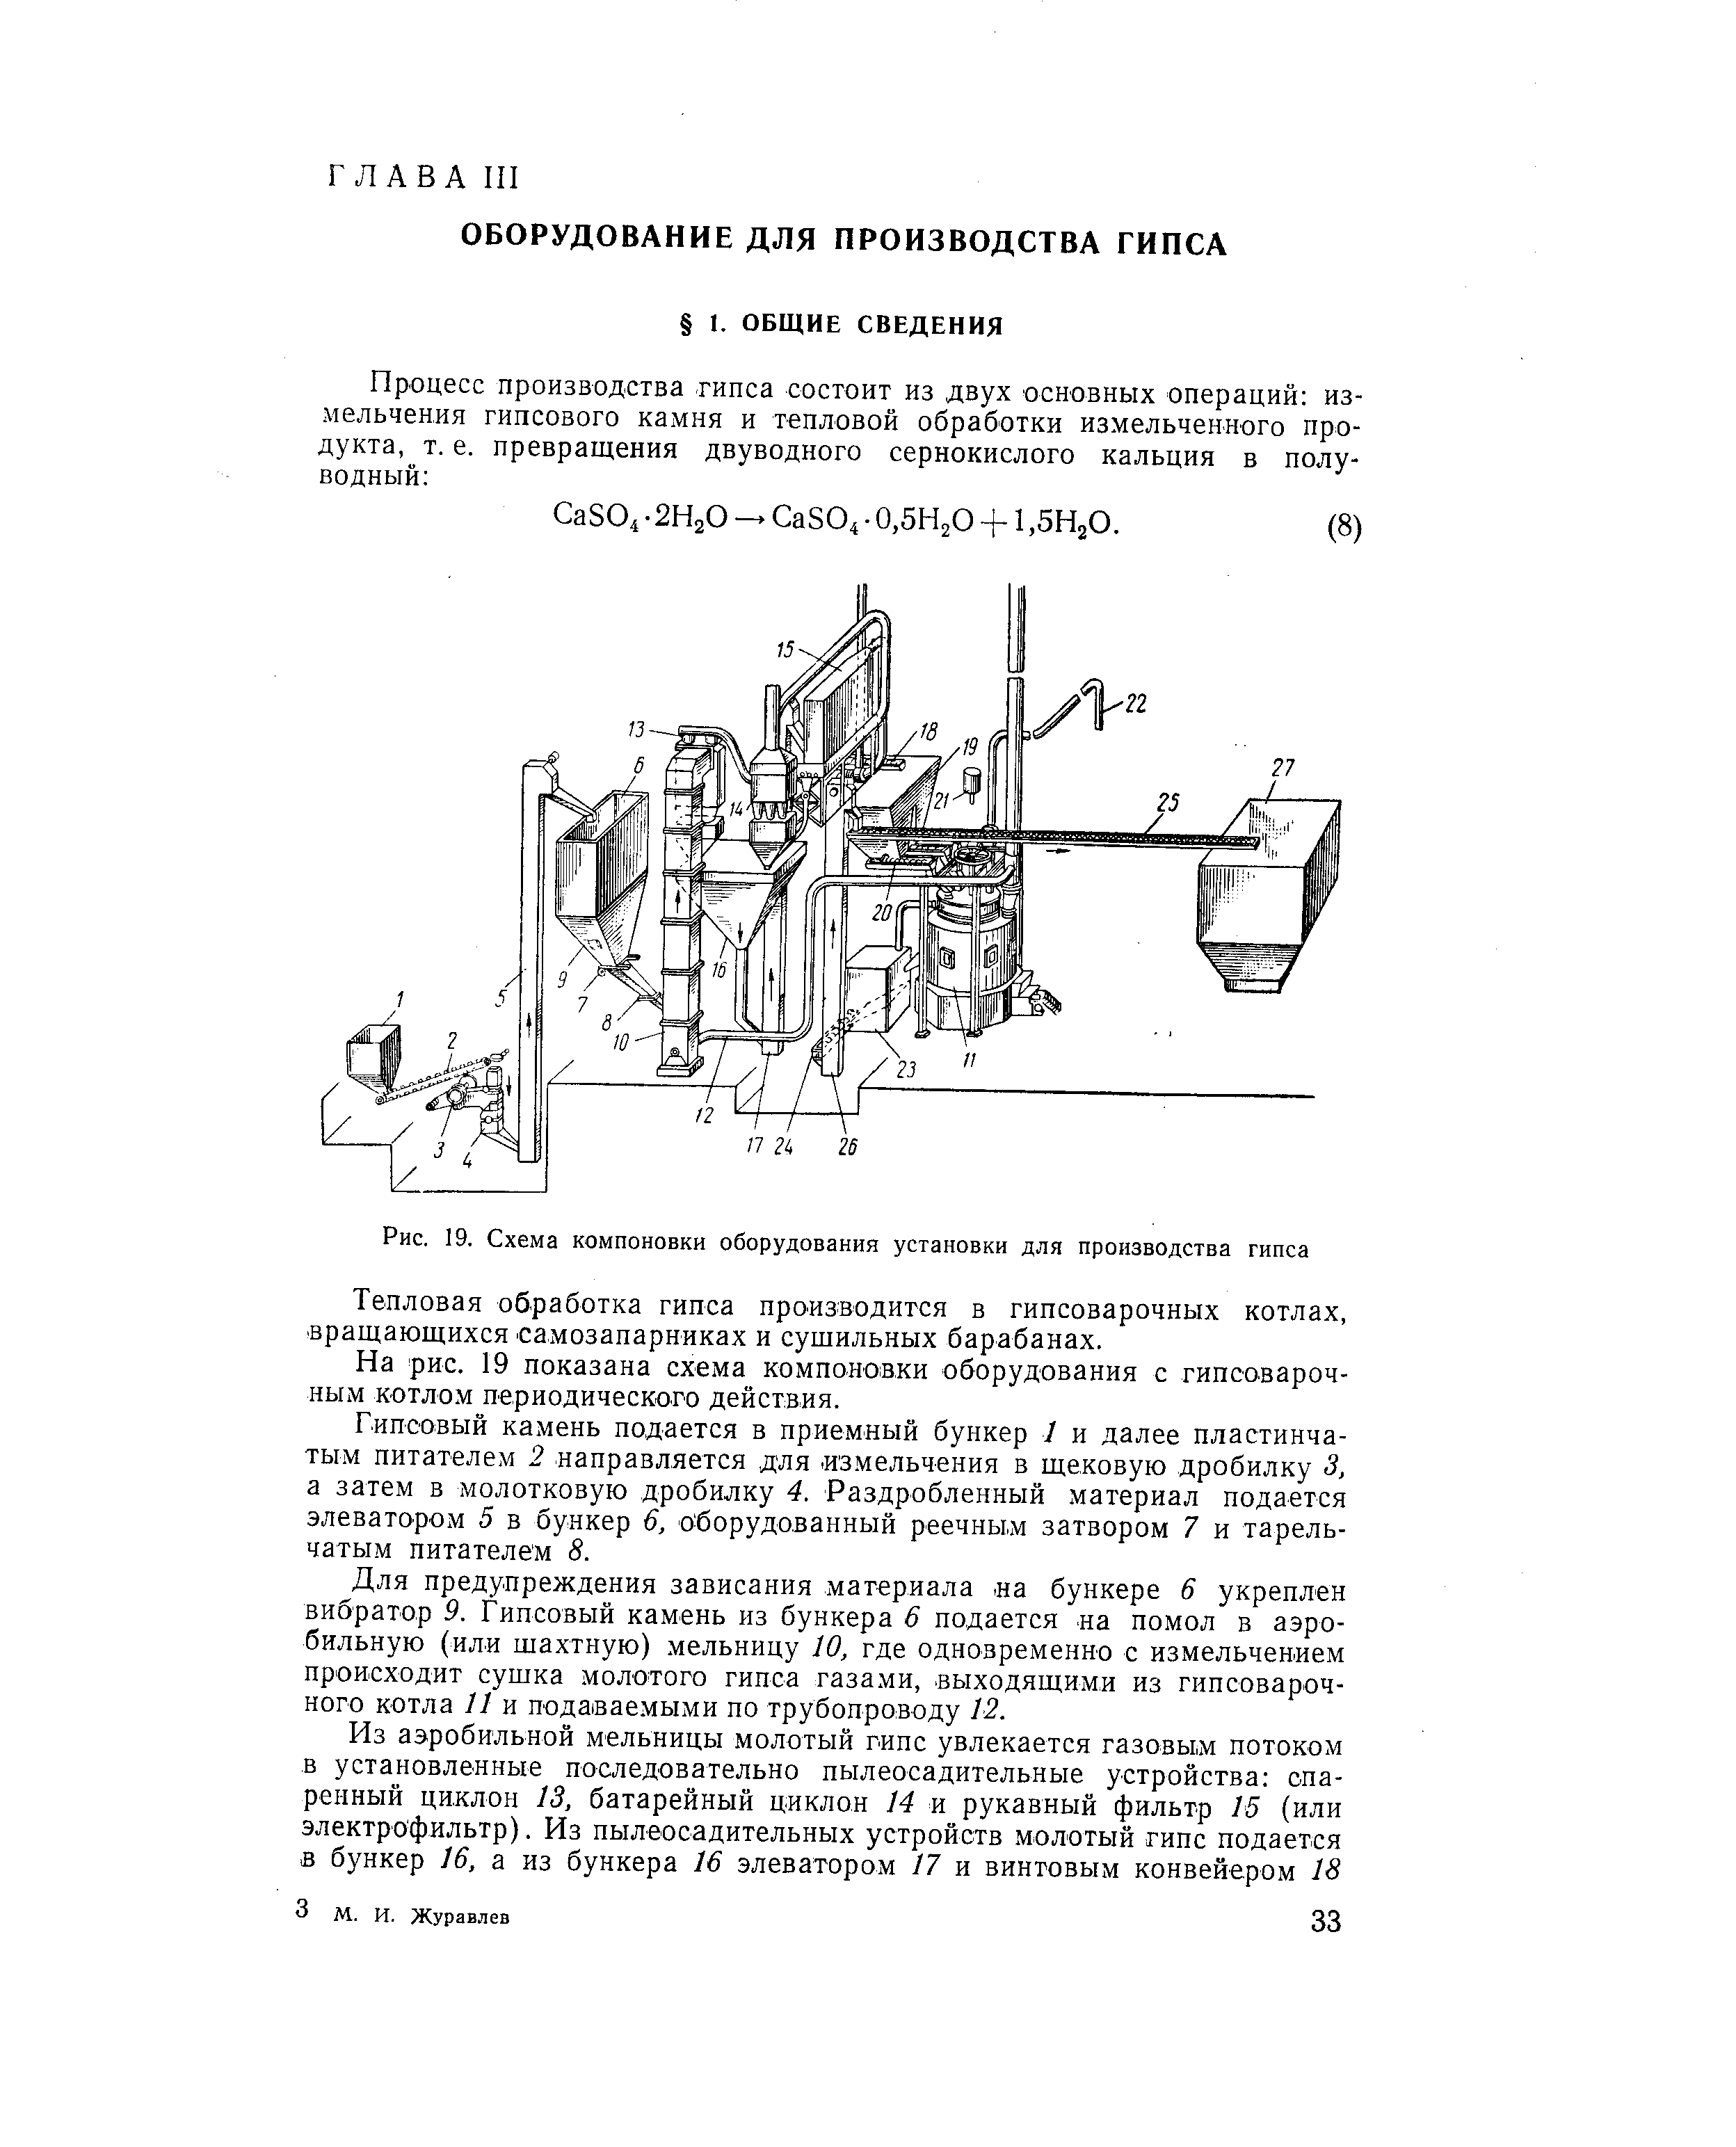 На рис. 19 показана схема компоновки оборудования с гипсоварочным котлом периодического действия.